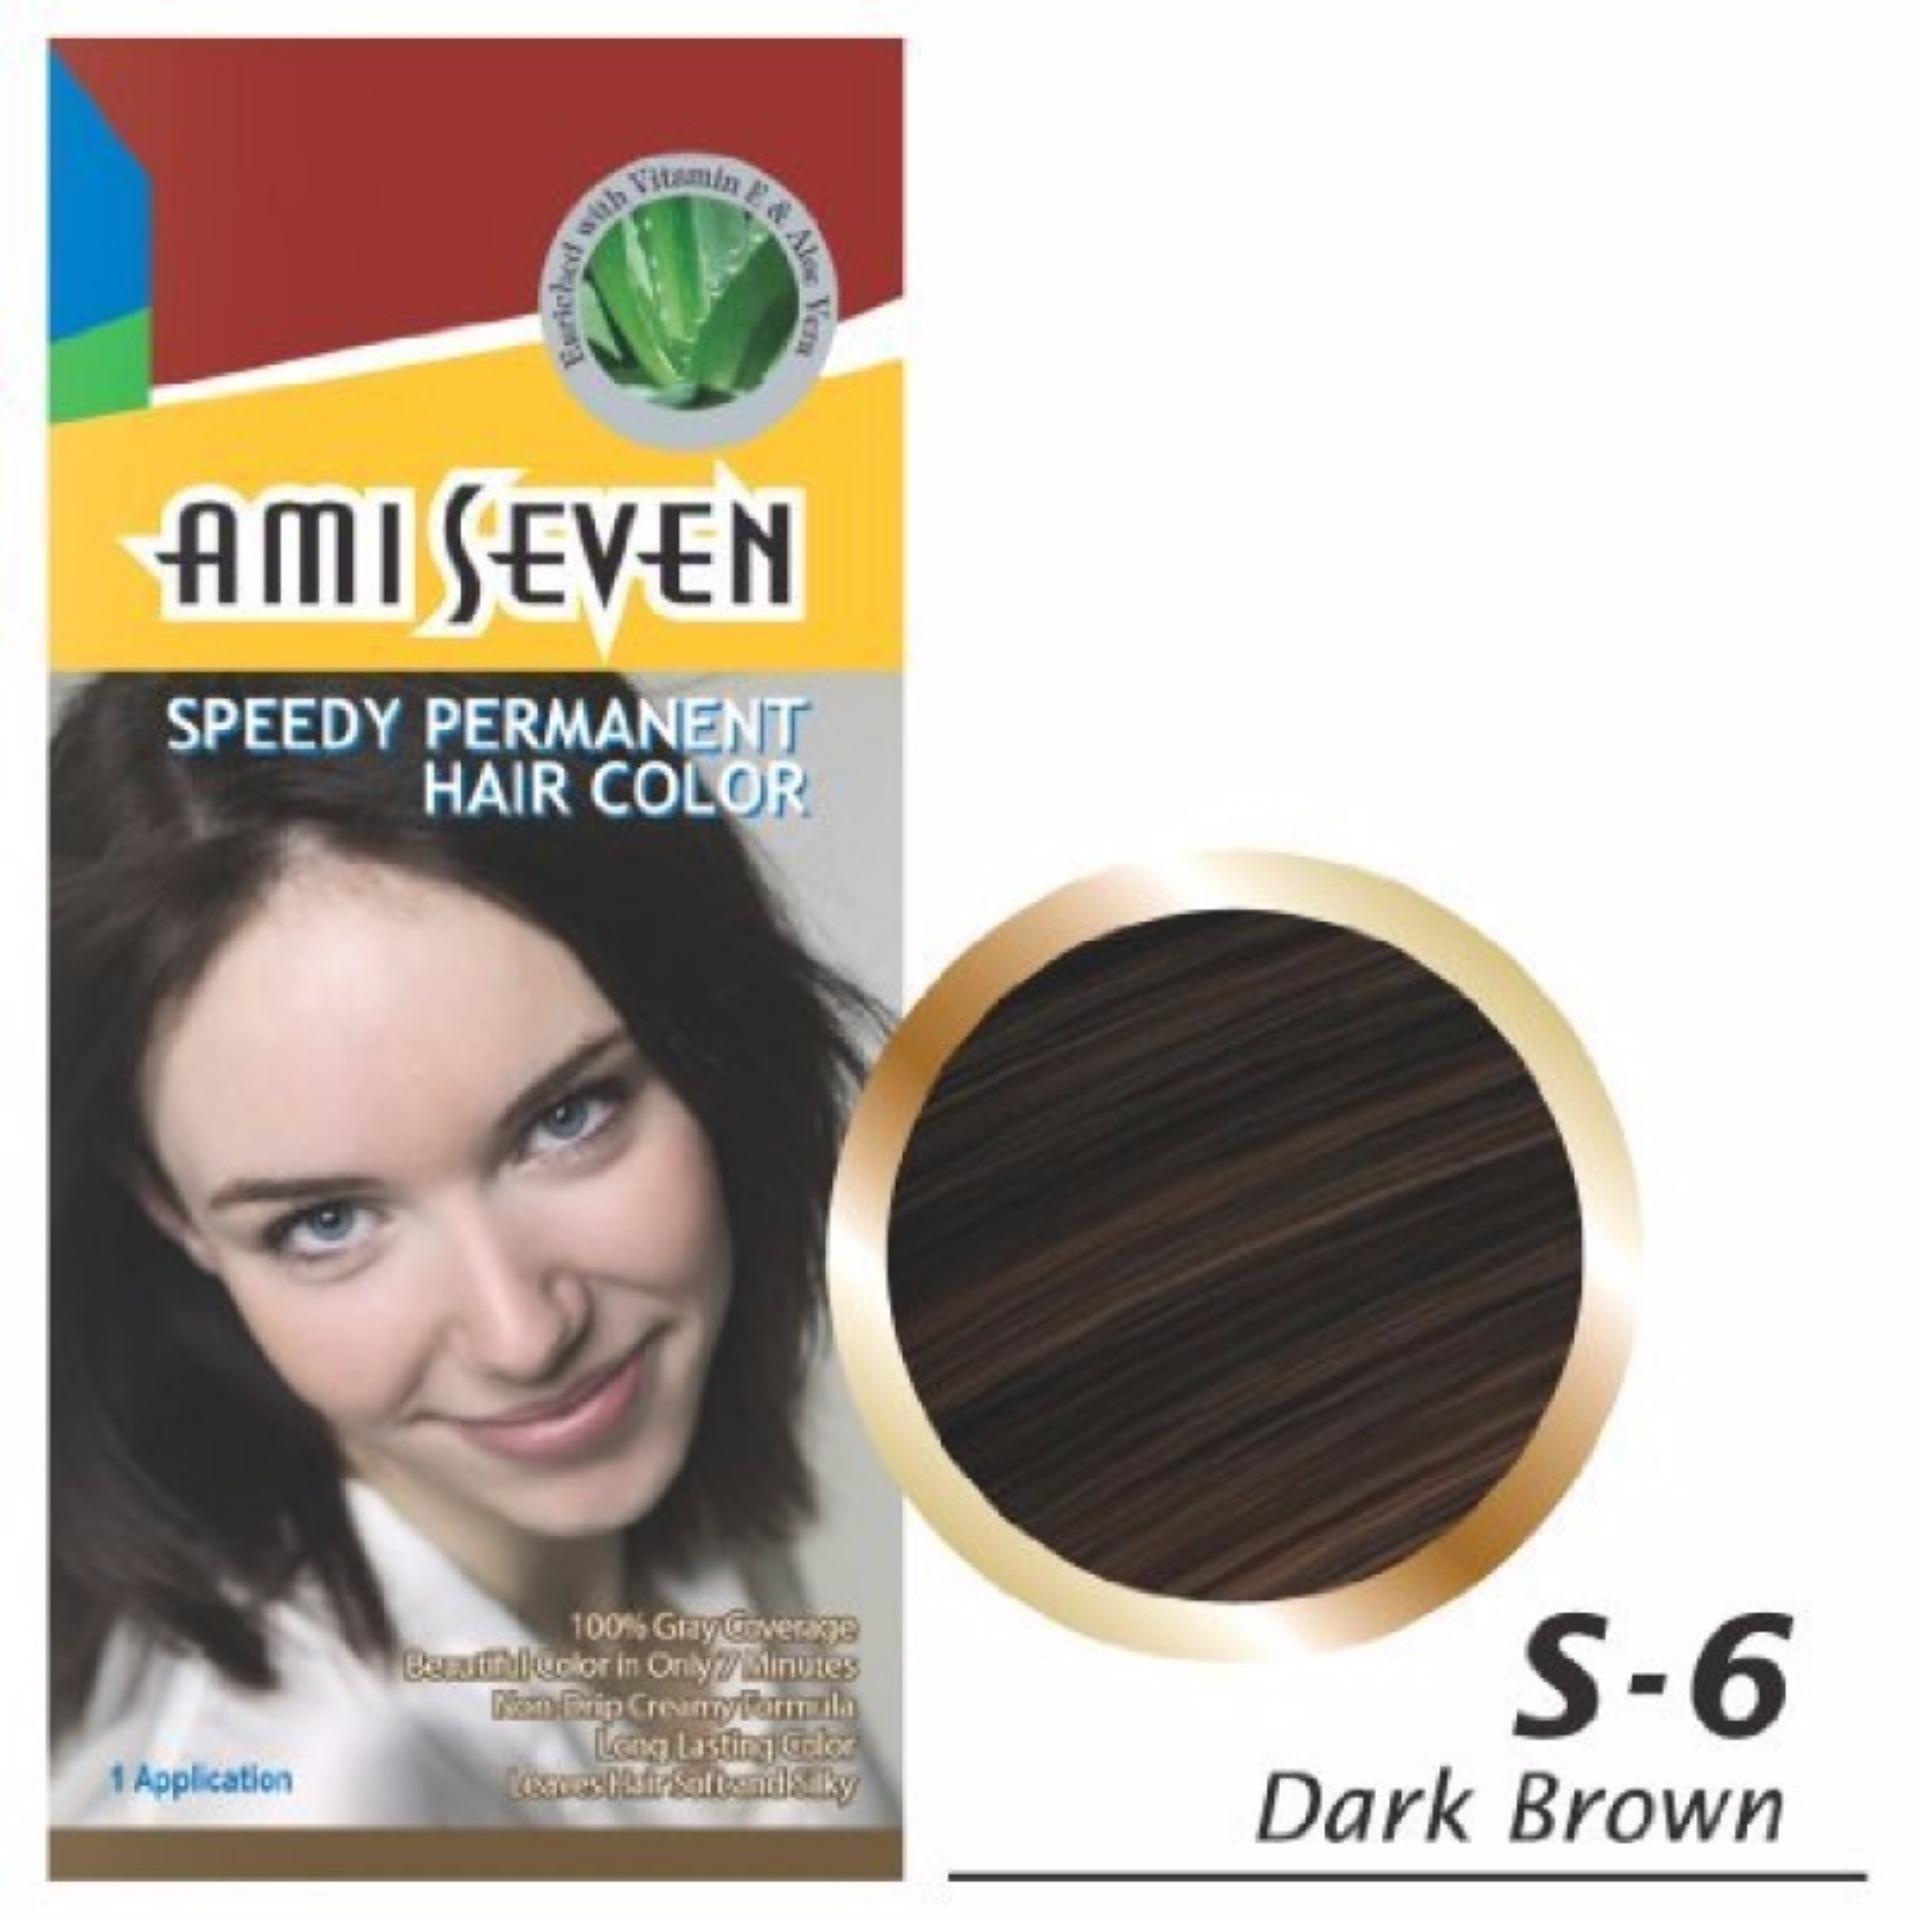 Bạn muốn tìm mua sản phẩm Thuốc nhuộm tóc Ami Seven S6 Dark Brown (Nâu đậm) giá rẻ và chất lượng tốt nhất? Hãy ghé thăm ngay website của Ami Seven để có được thông tin về nơi bán hàng uy tín và đáng tin cậy nhất. Đừng quên nhấp chuột vào ảnh để biết thêm chi tiết và chia sẻ sản phẩm với bạn bè nhé!